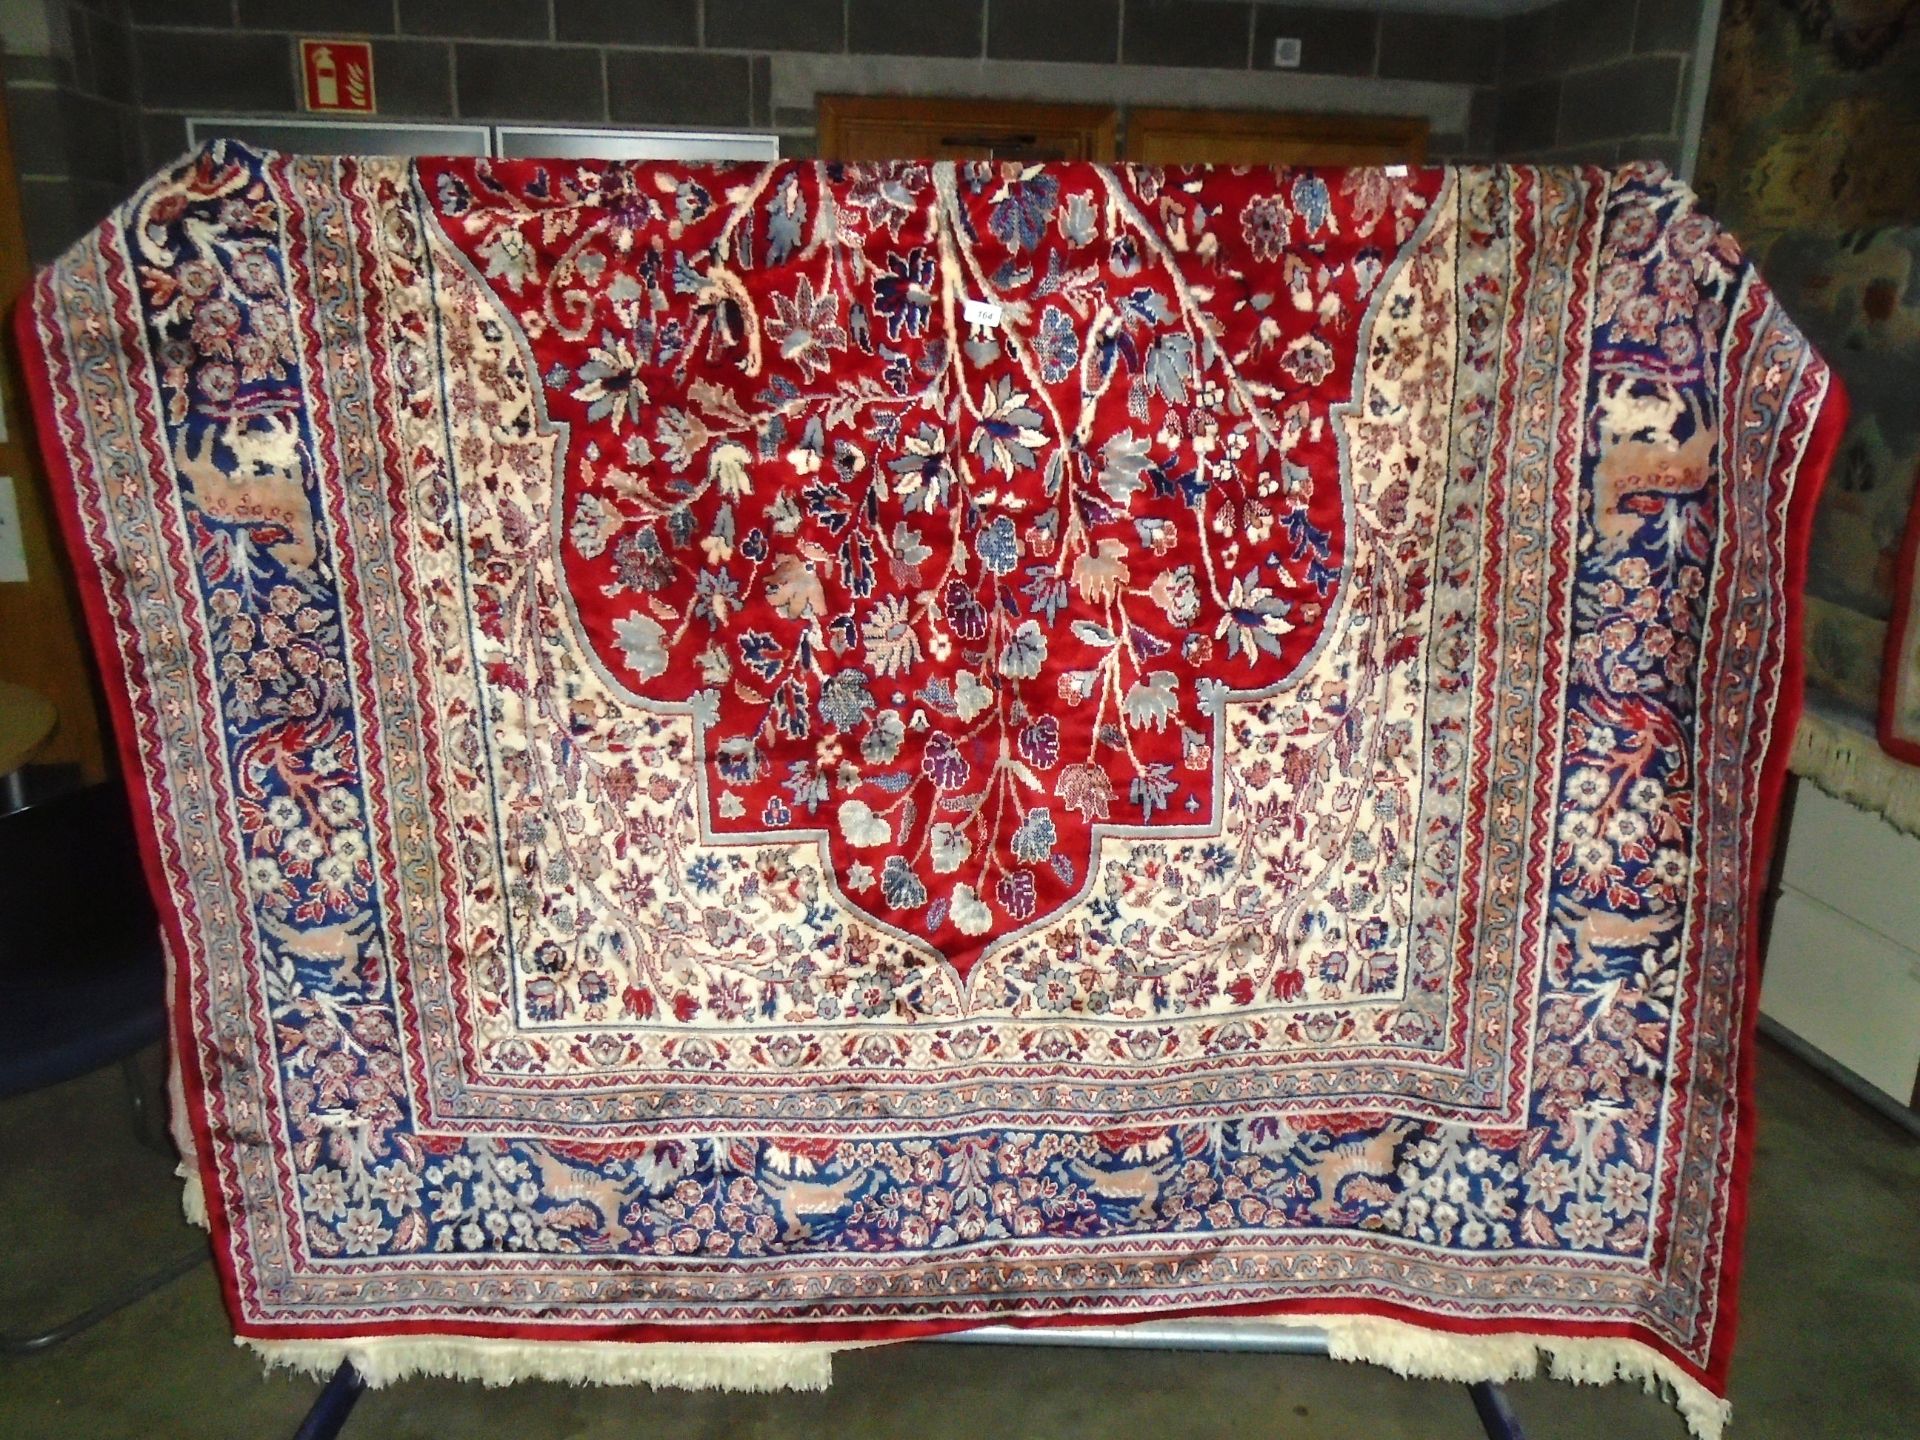 Large red/blue/light brown floral patterned rug 200 x 300cm